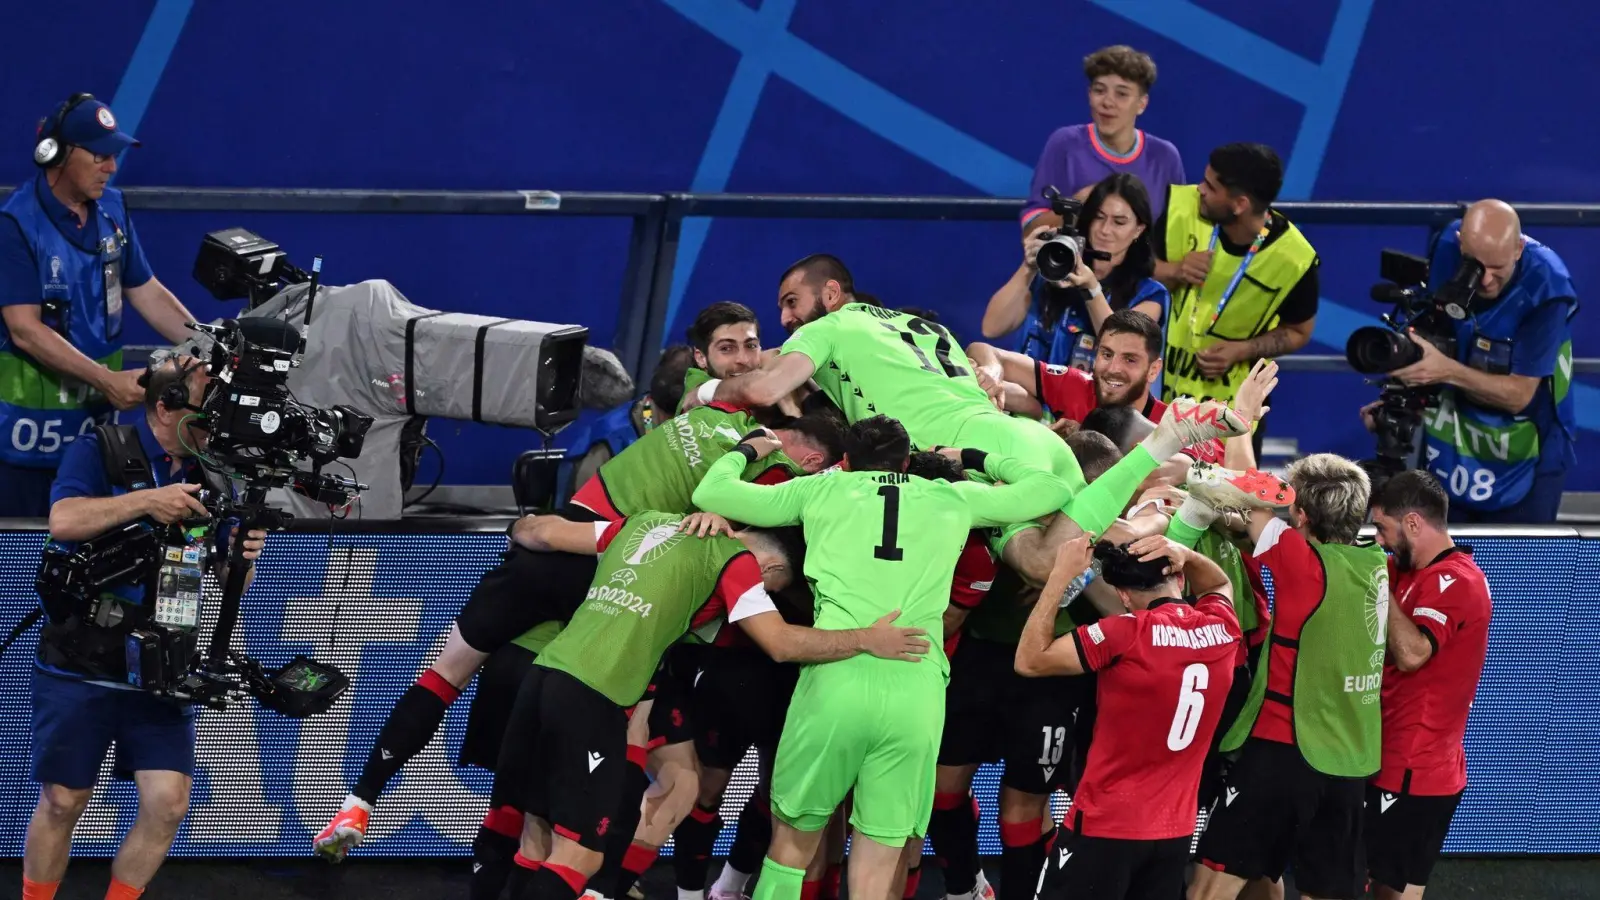 Die Georgier setzten sich gegen Portugal durch und erreichten das Achtelfinale. (Bild: Bernd Thissen/dpa)